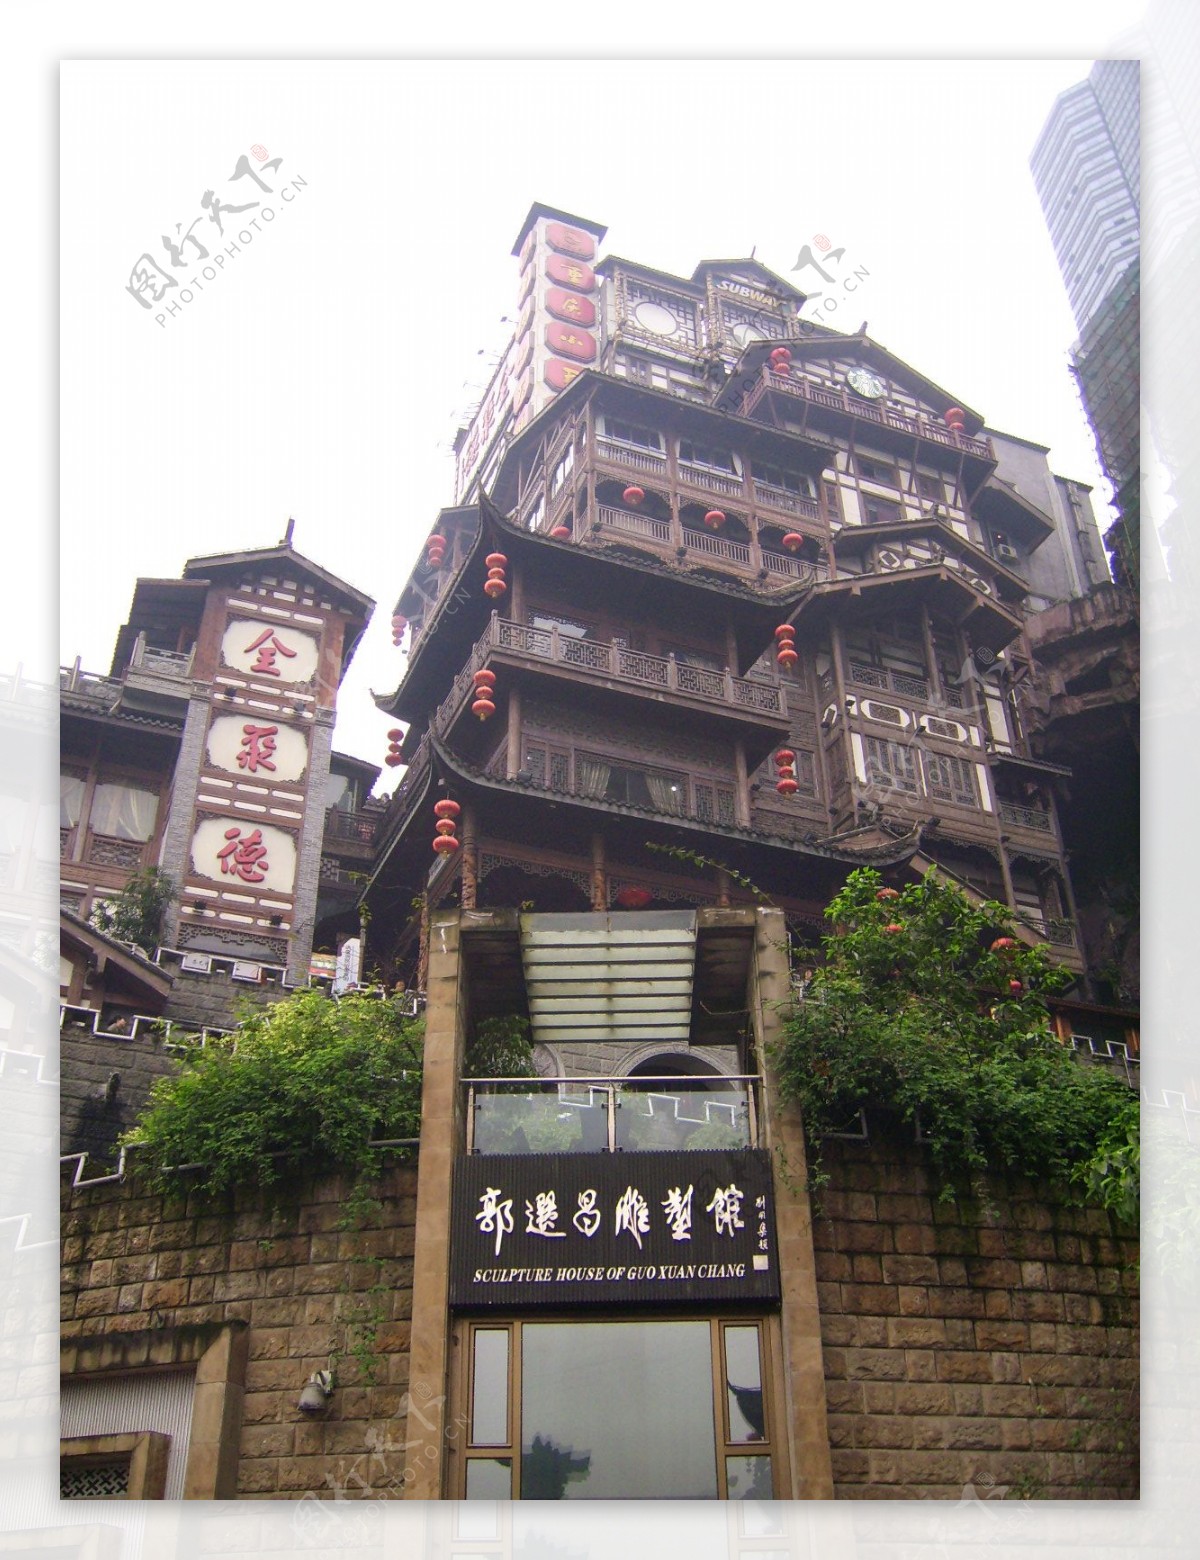 重庆有个洪崖洞 · 洪崖洞以最具巴渝传统建筑特色的吊脚楼为主体